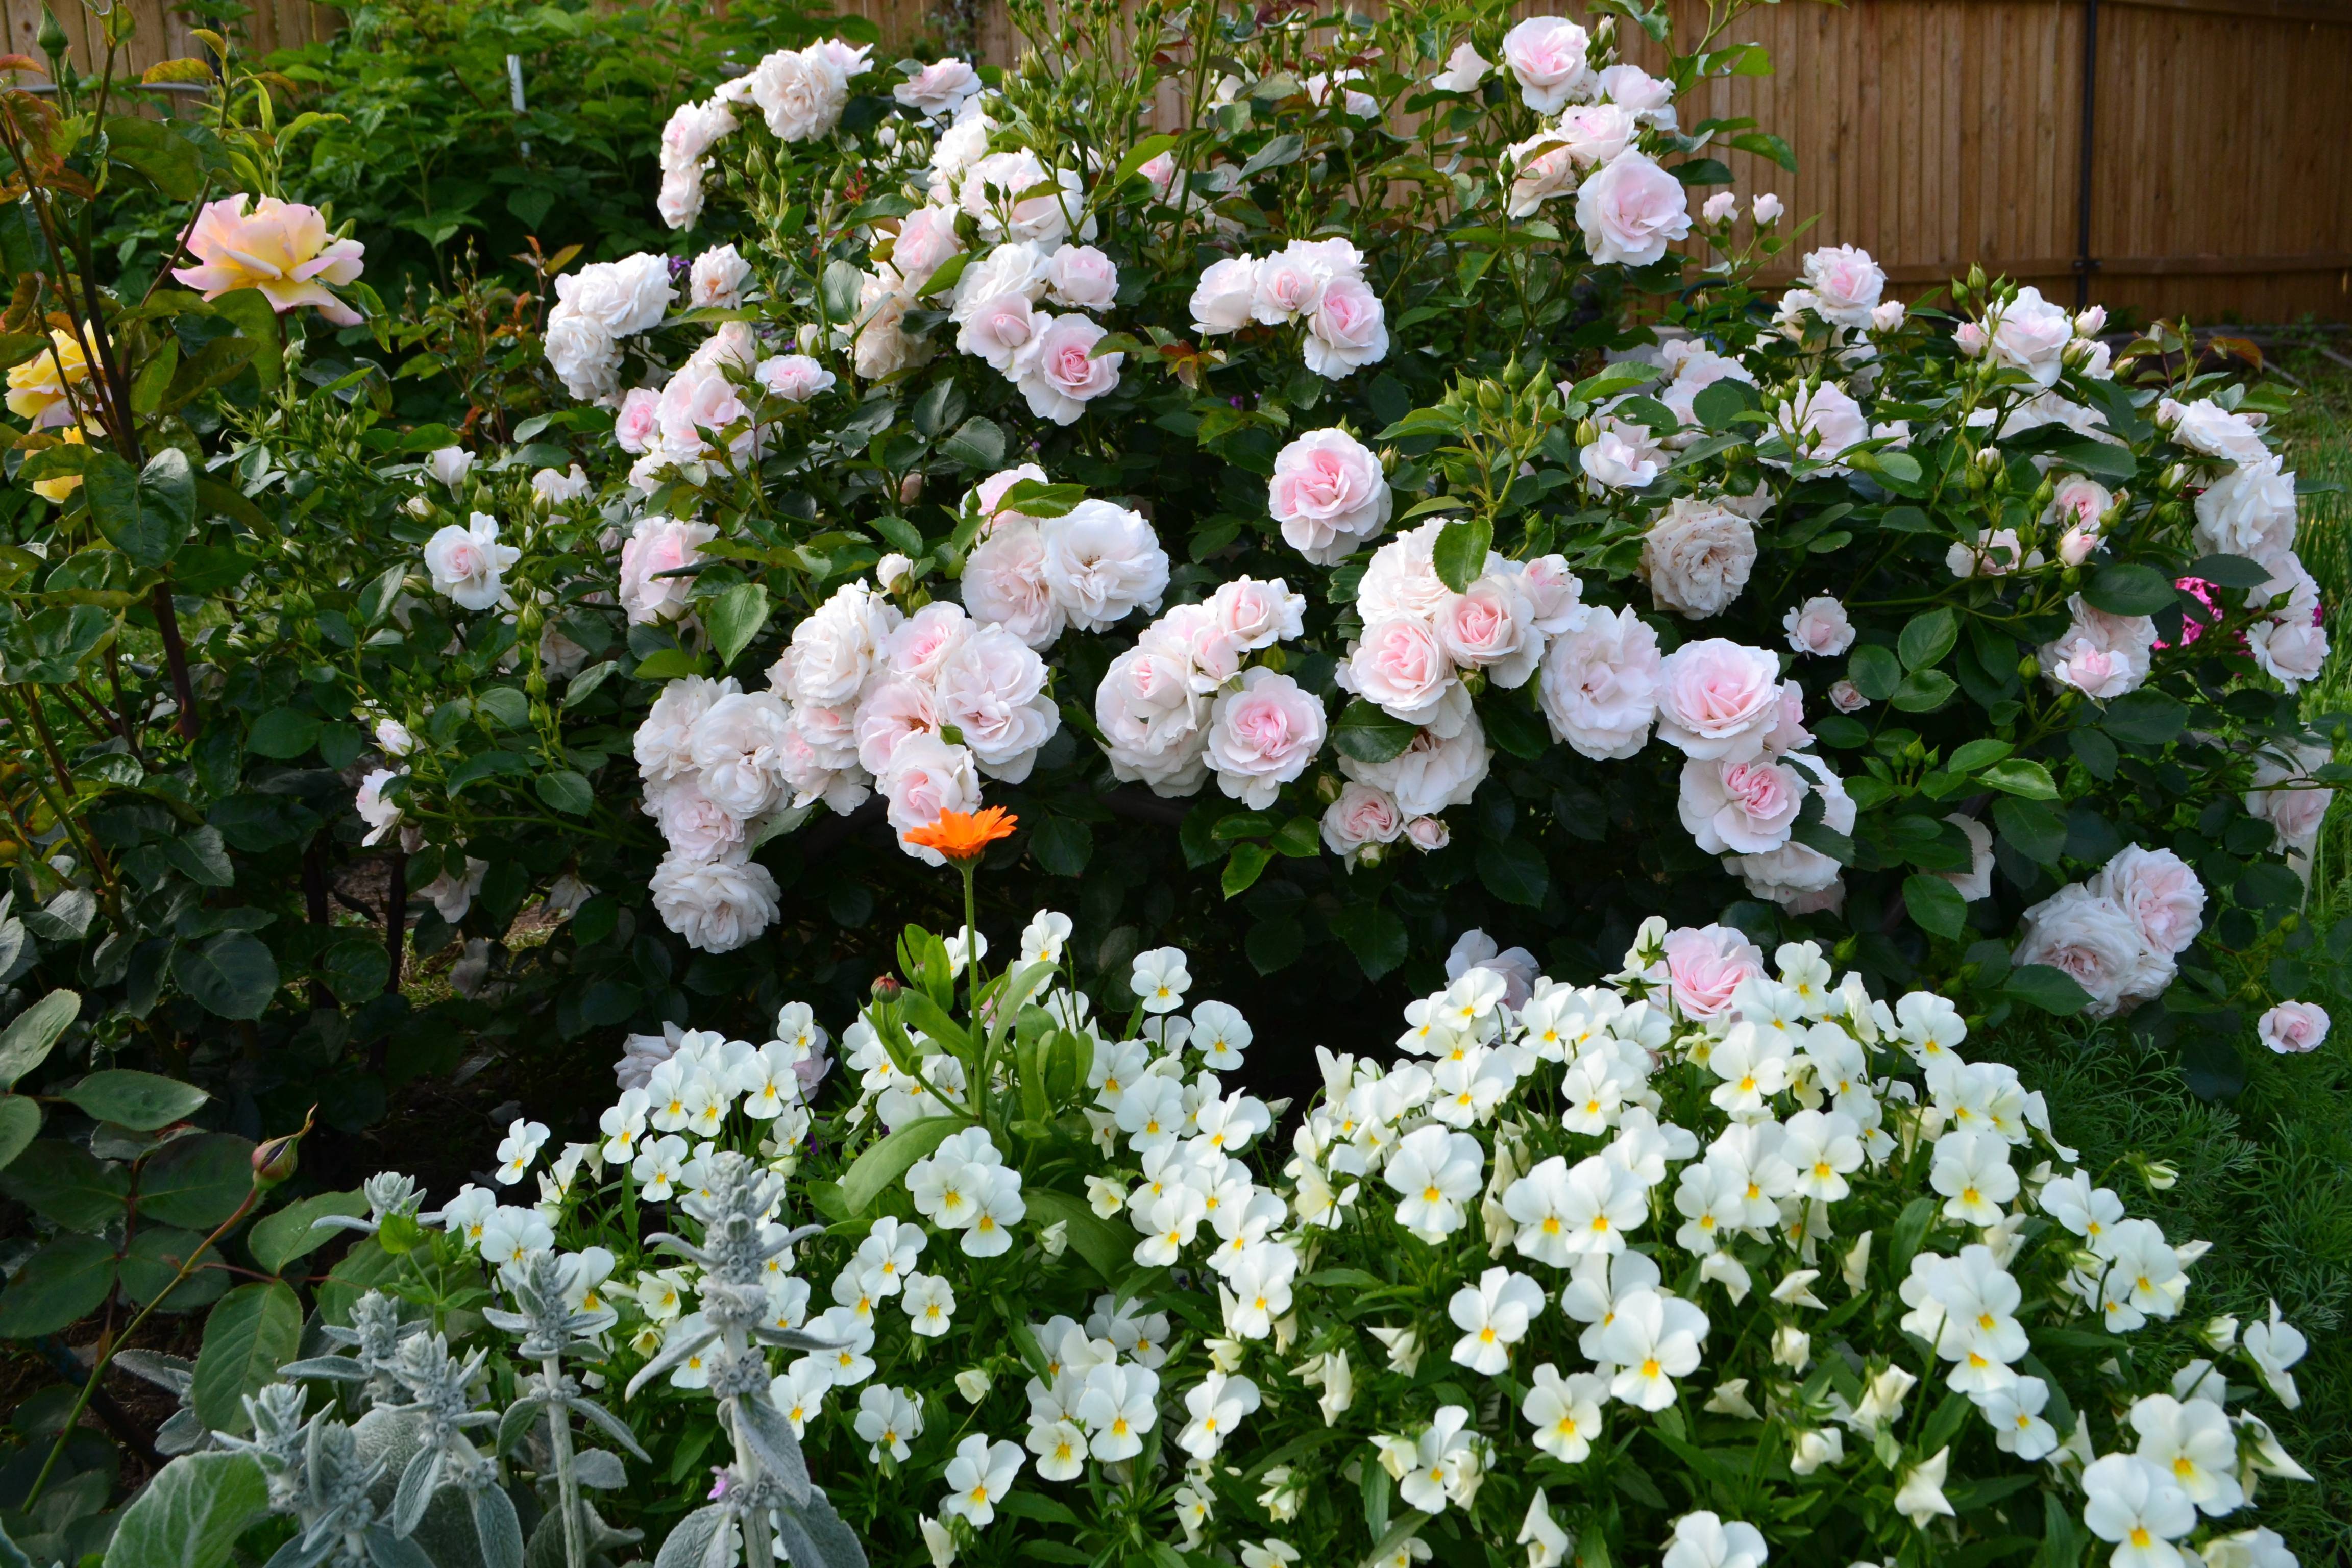 Роза абрахам дерби (abraham darby) — описание сортового цветка